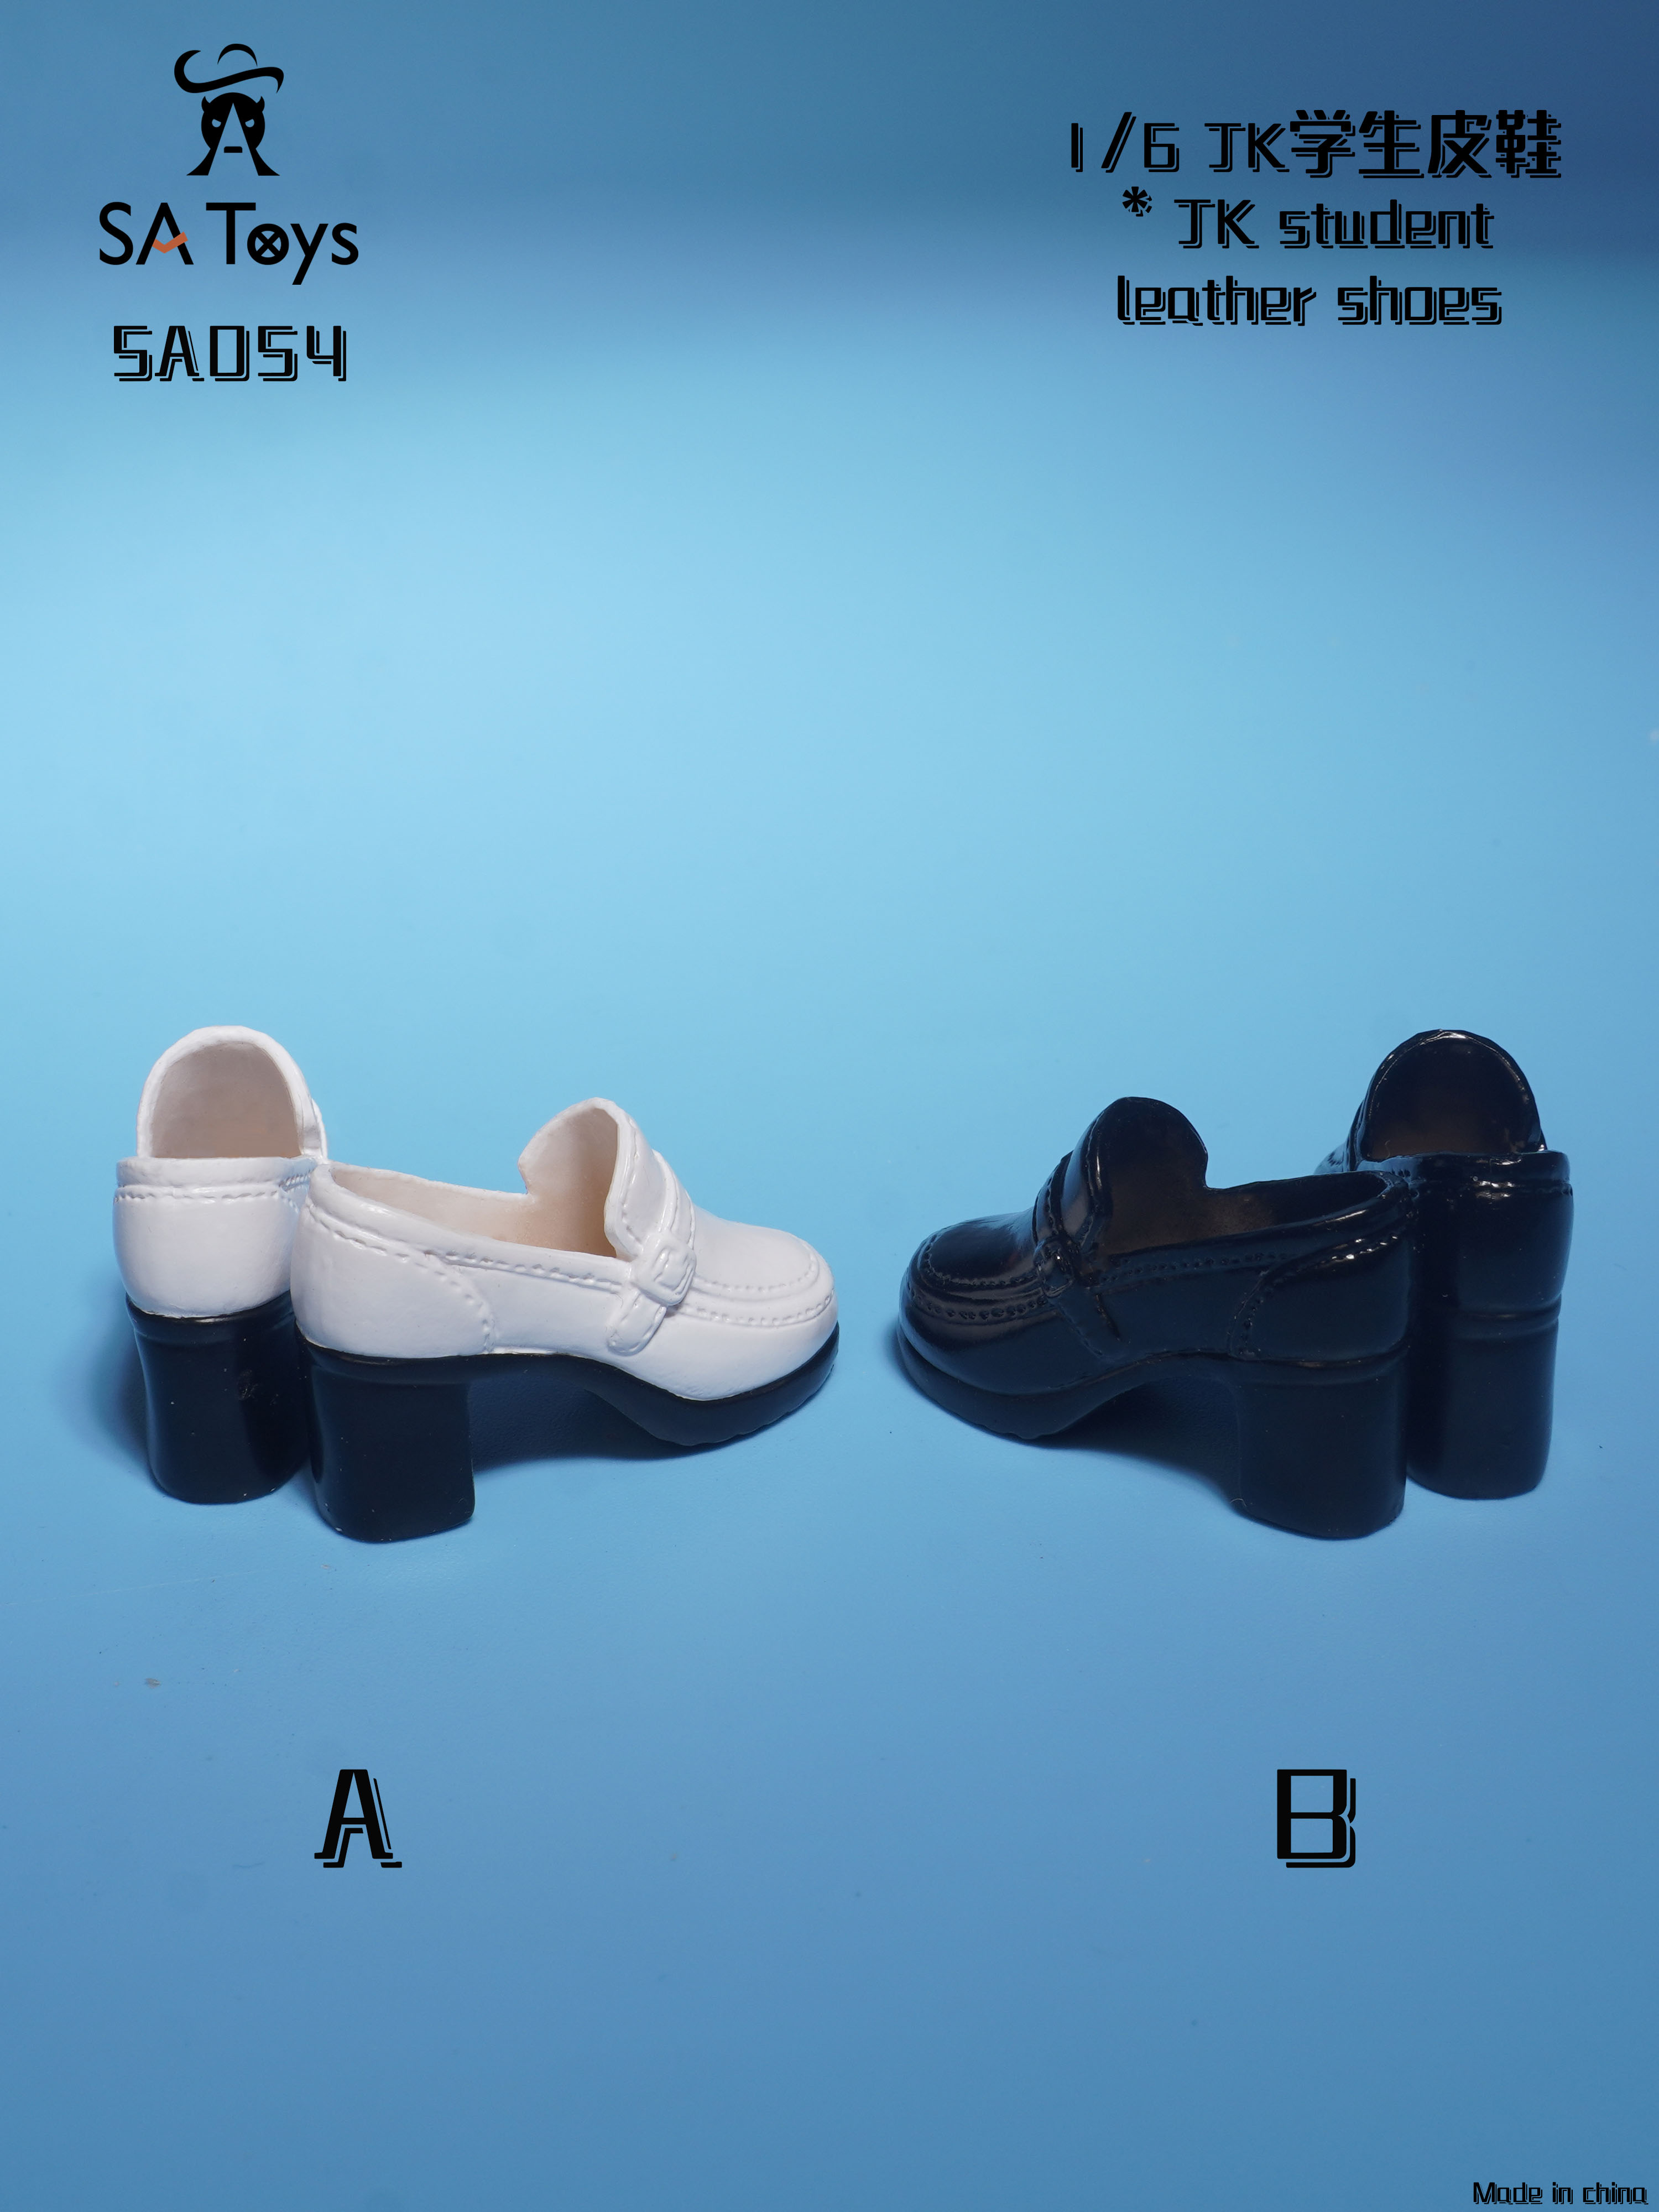 SAToys - NEW PRODUCT: SA Toys - Hollow leather: shoes (SA009 A/B) / Mid tube boots (SA010 A/B) / student shoes (SA054 A/B) 02134